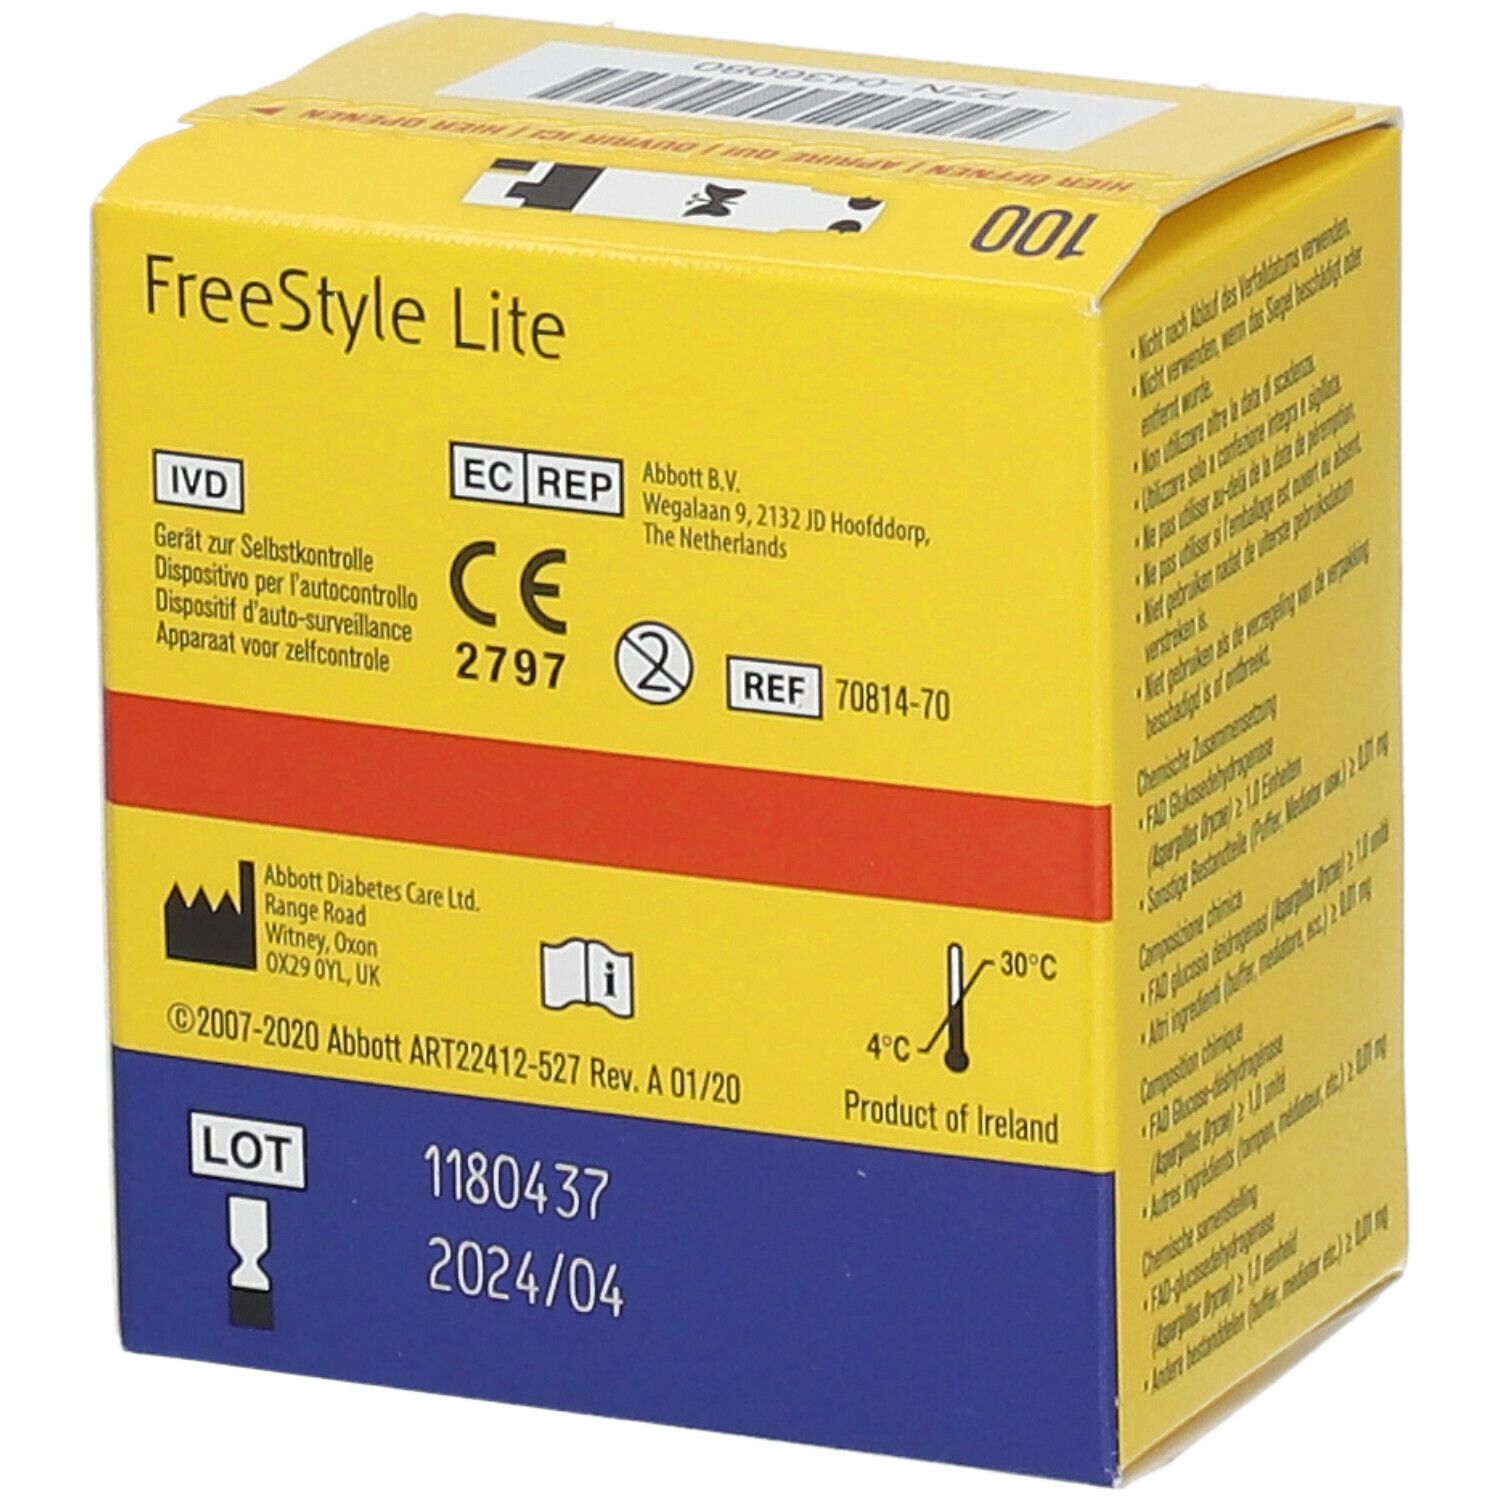 FreeStyle Lite Blutzucker Teststreifen ohne Codieren